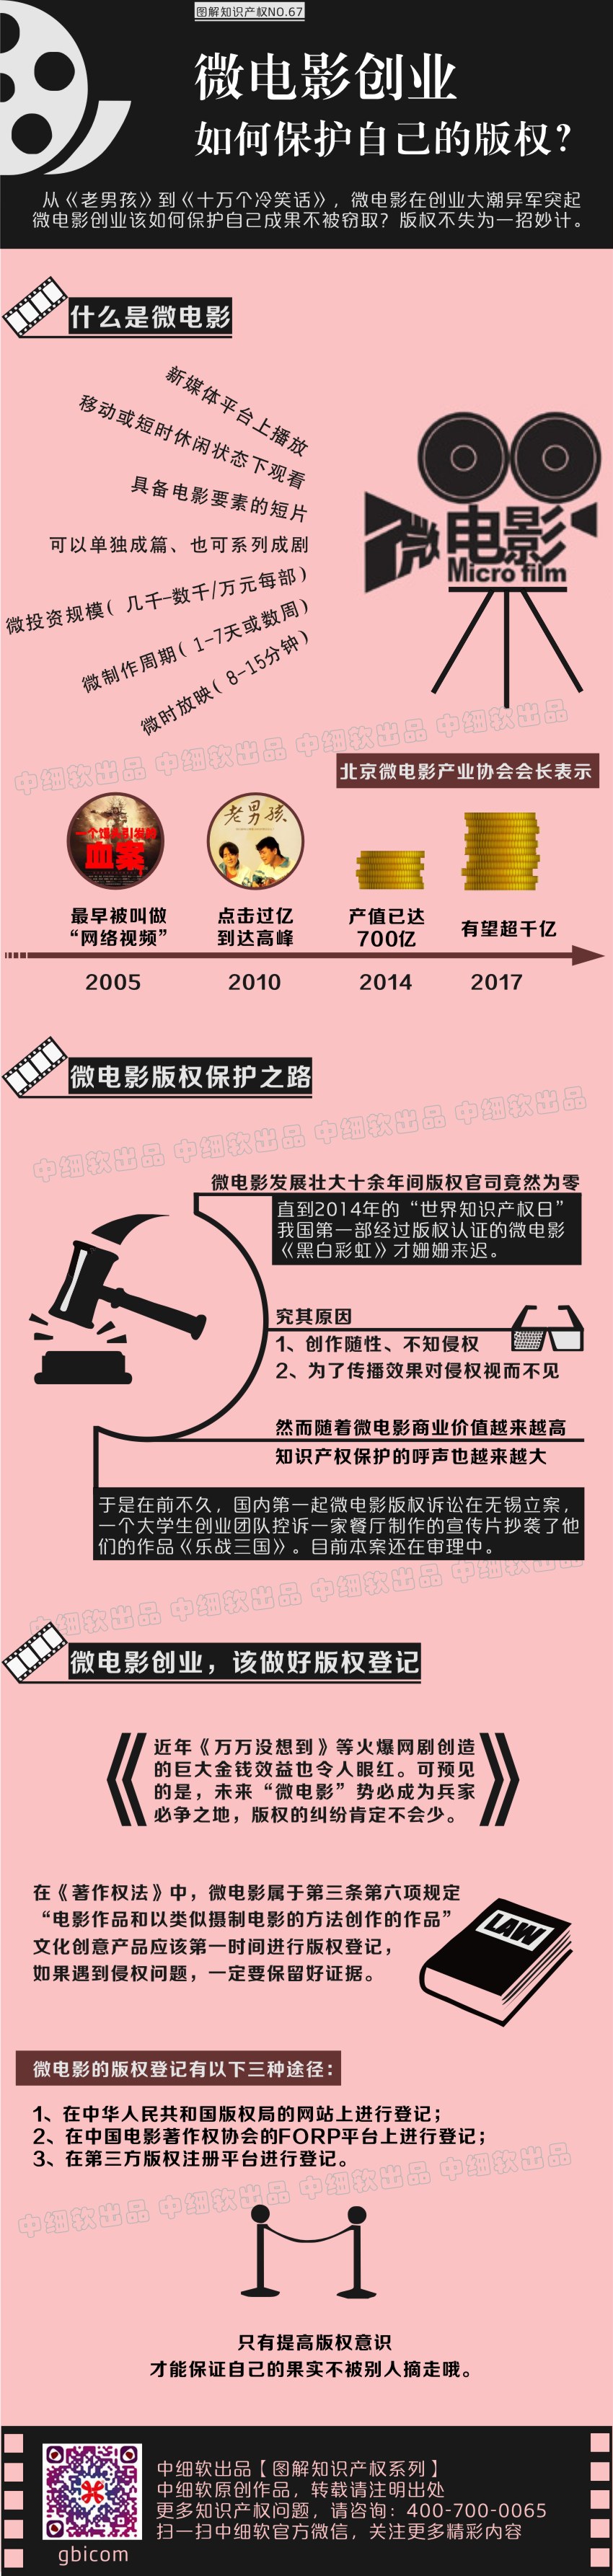 20150828于鑫图解——微电影创业如何保护版权.jpg